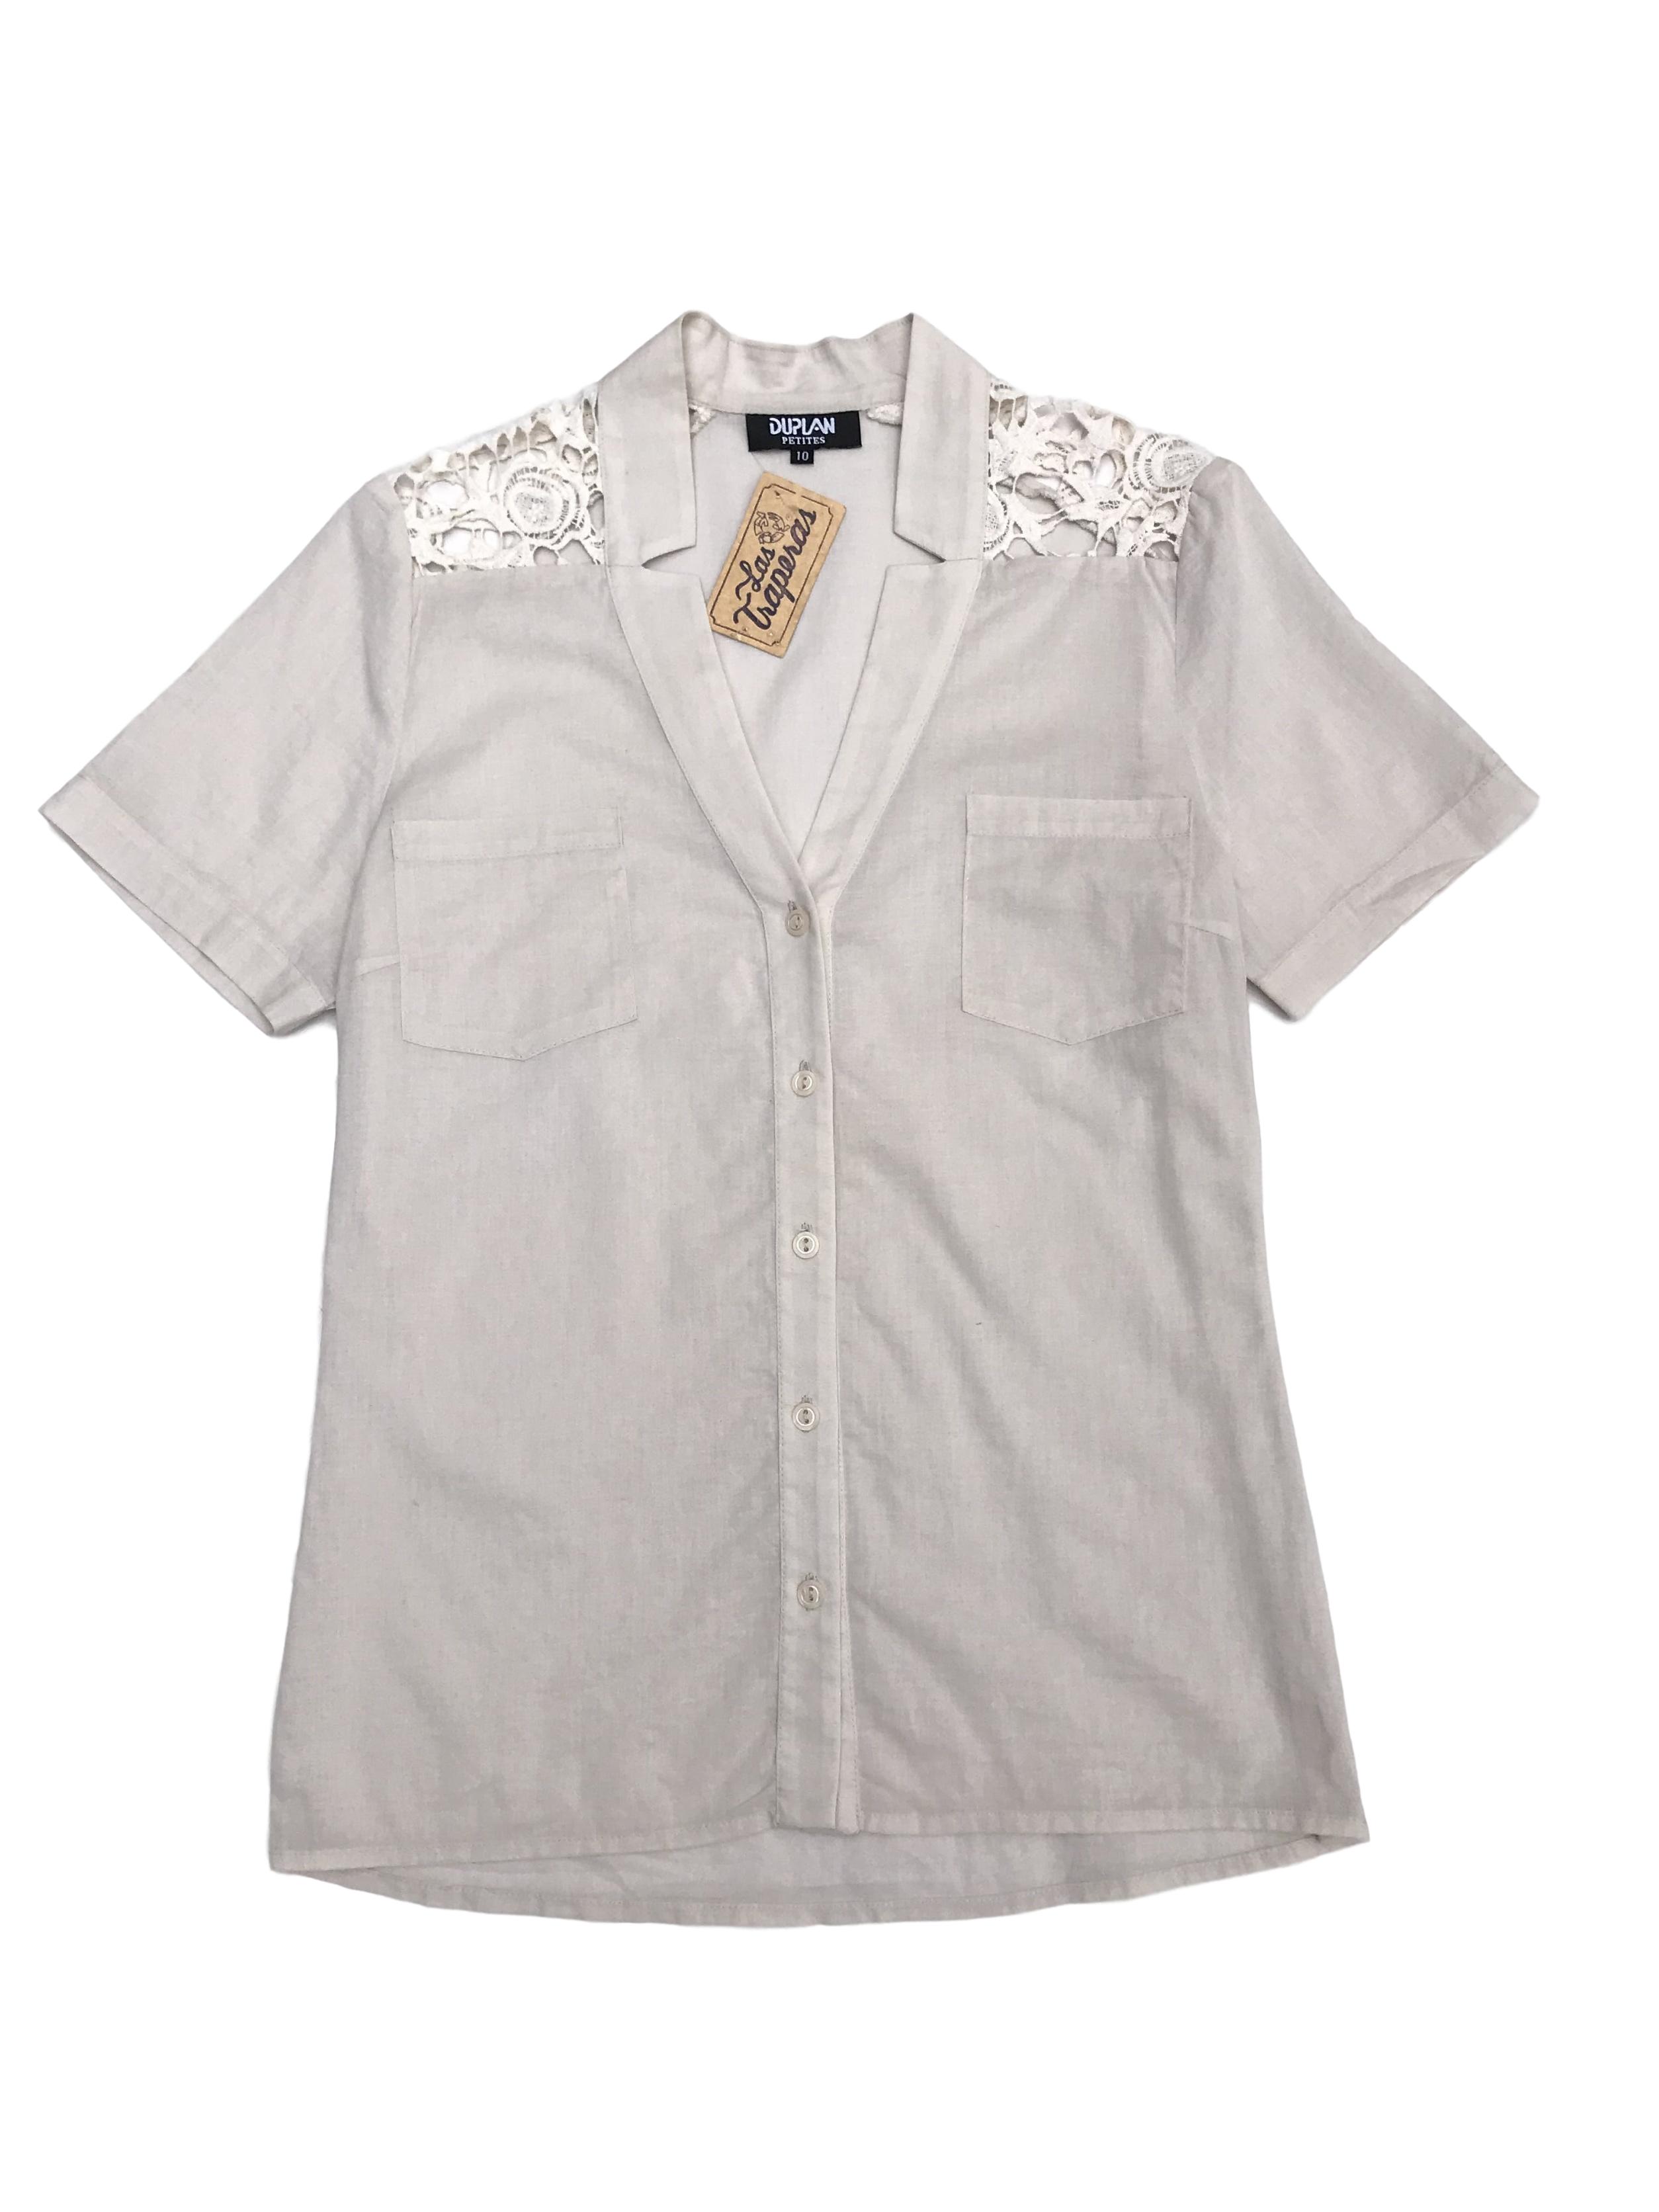 Blusa crema con botones y bolsillos delanteros, encaje en los hombros, tela tipo algodón camisa